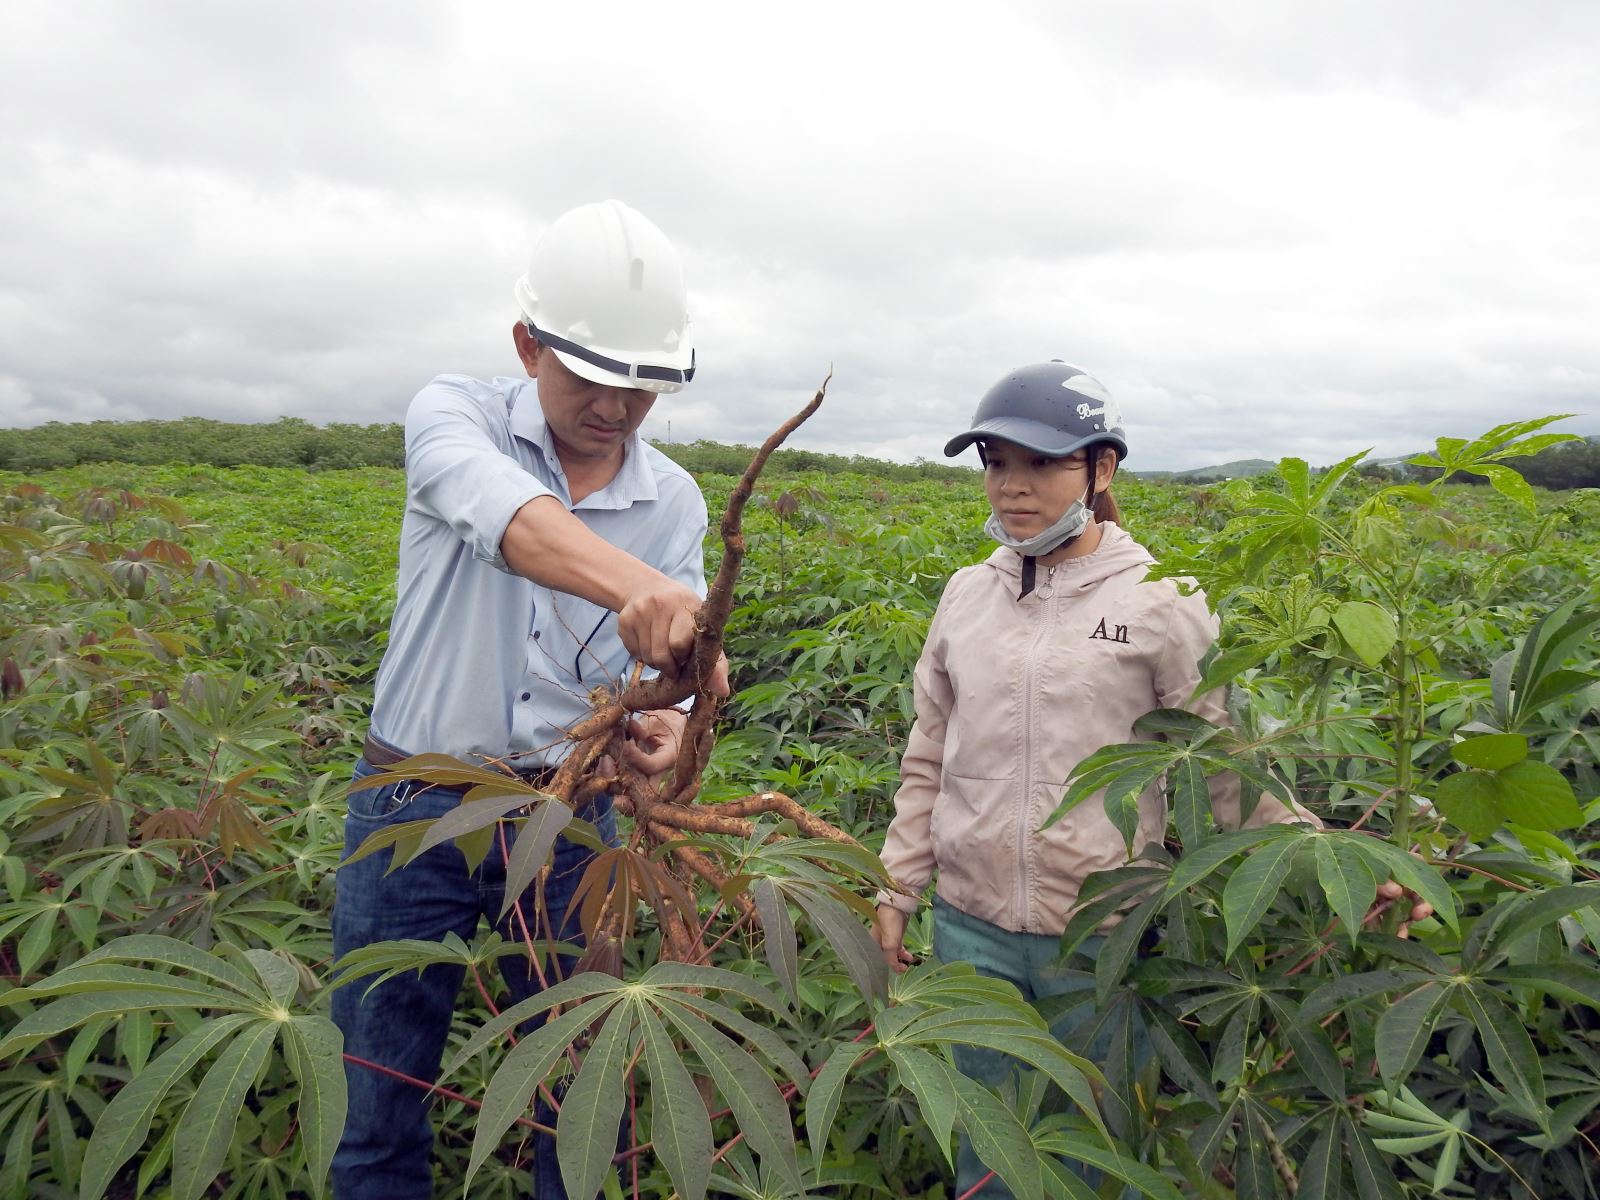 Lá sắn, lá chuối, lá khoai trước bỏ đi nay bán đắt hàng cho nước ngoài, Việt Nam thu ngay 6 triệu USD - Ảnh 1.